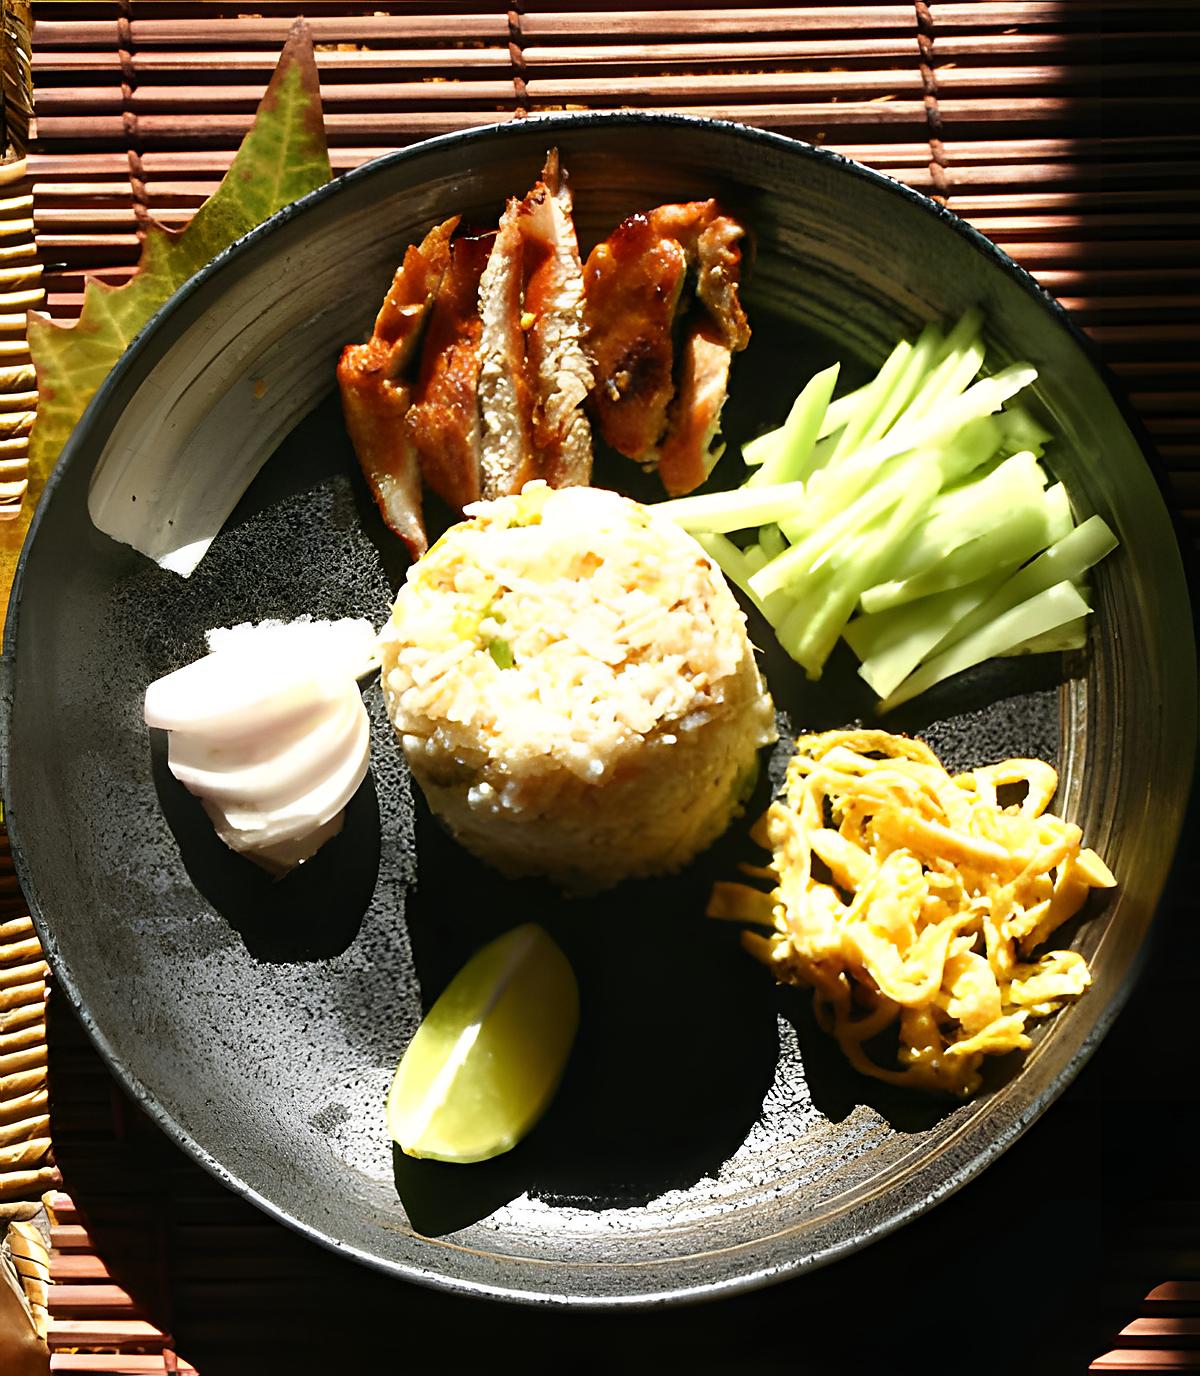 recette Riz frit thaï à la pâte de crevettes et porc caramélisé